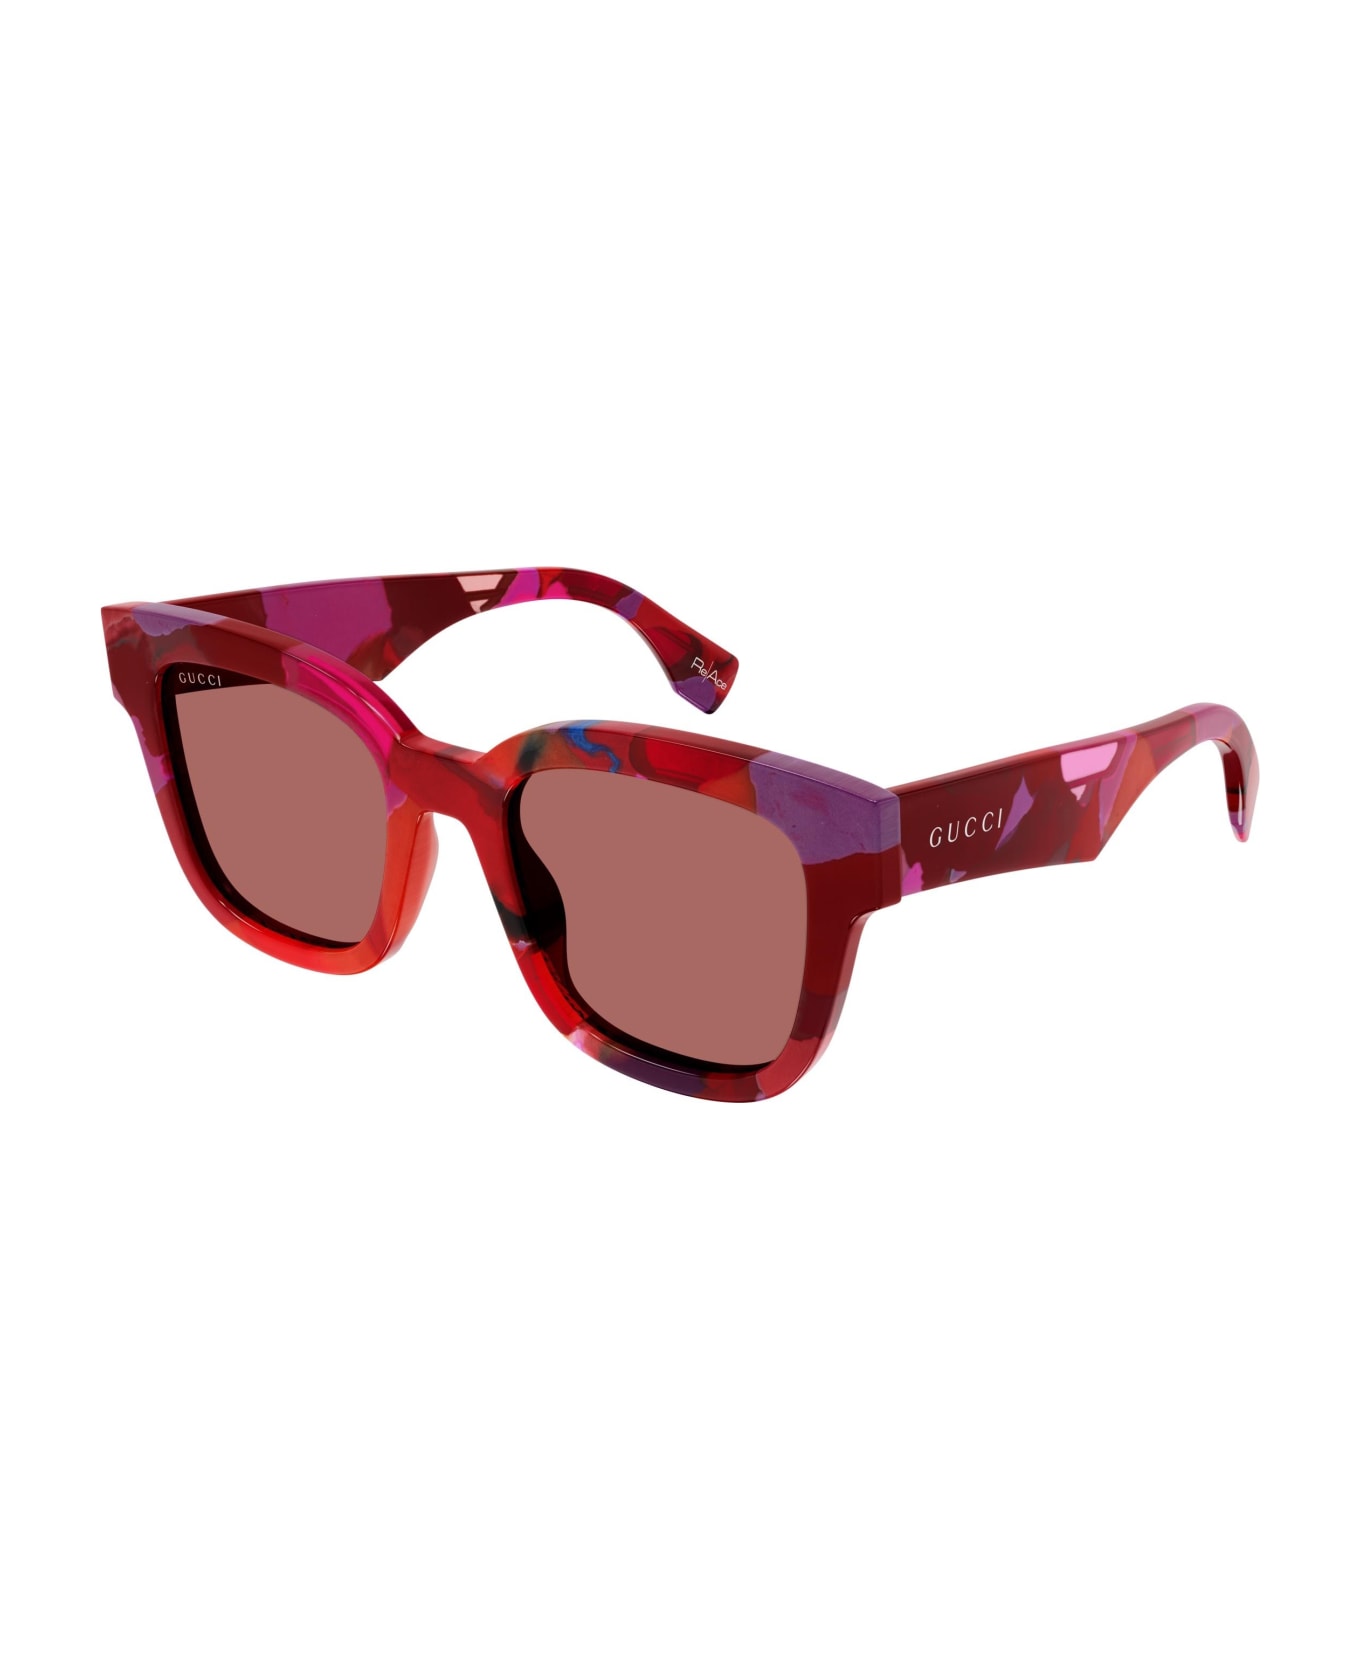 Gucci Eyewear Sunglasses - Rosso/Arancione